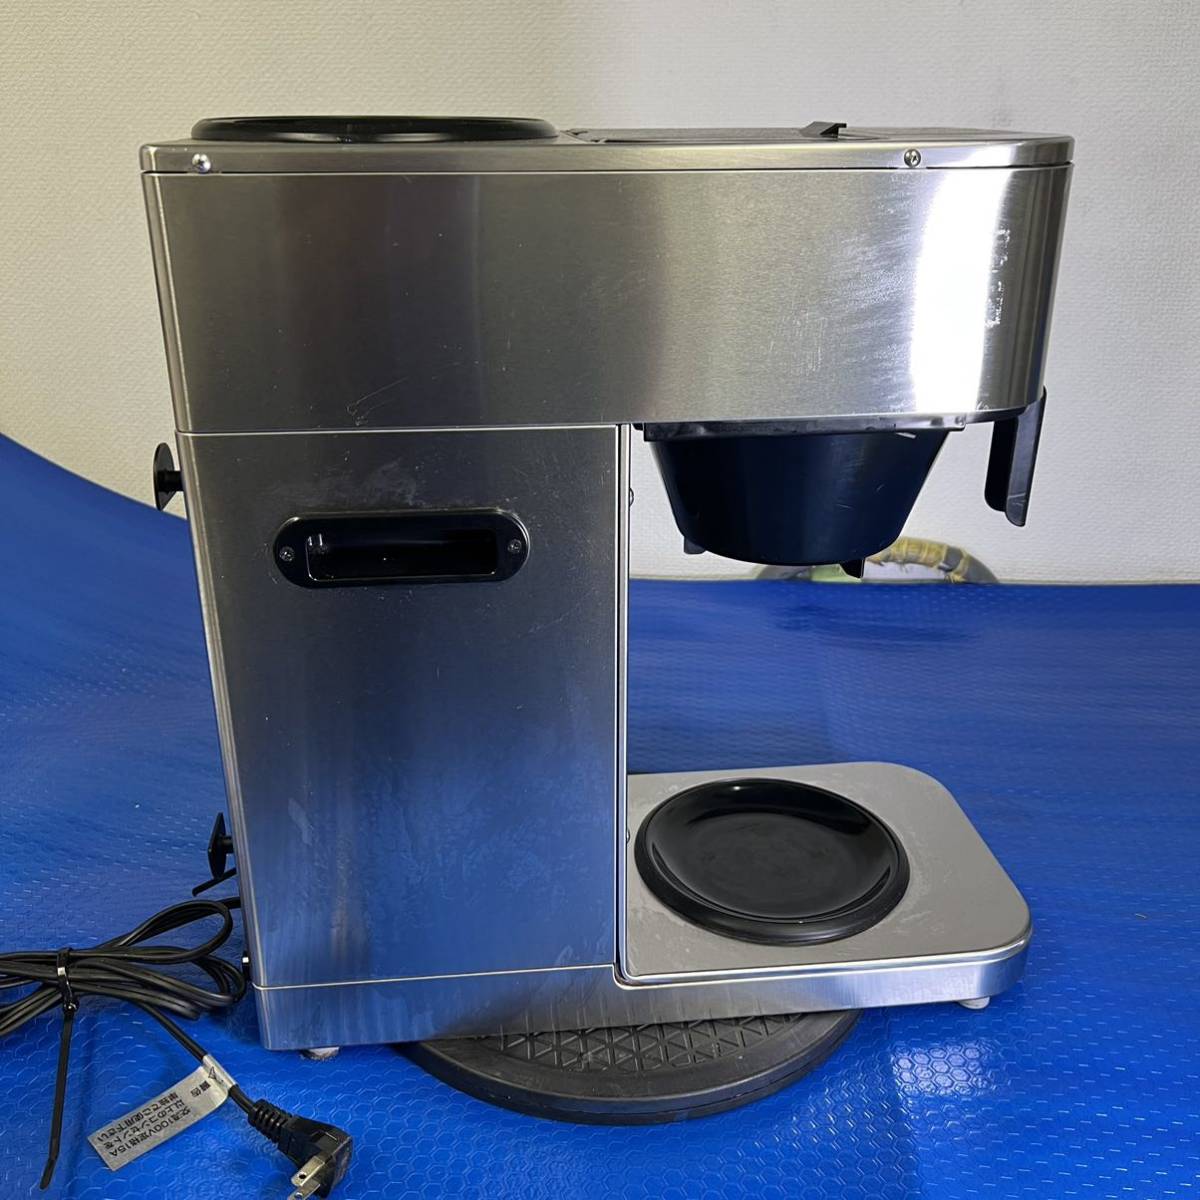 ボンマックBONMAC コーヒーブルーワー BM-2100 コーヒーメーカー 業務用湯沸かし器 飲食店舗用品 厨房機器 カフェ_画像5